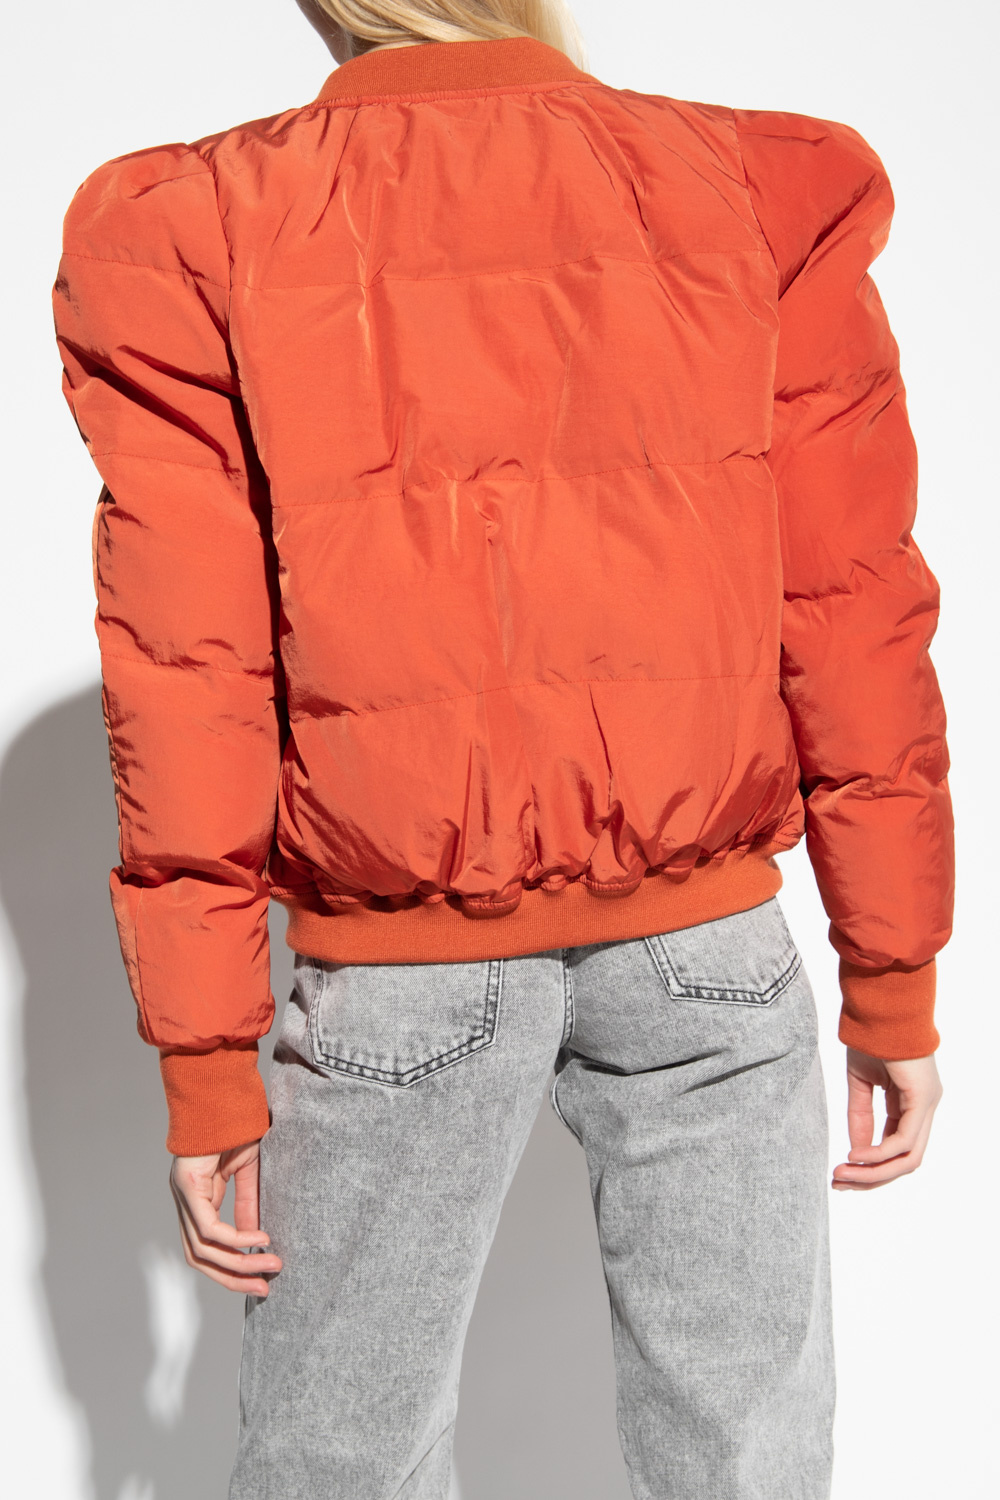 Marant Etoile ‘Cody’ insulated jacket